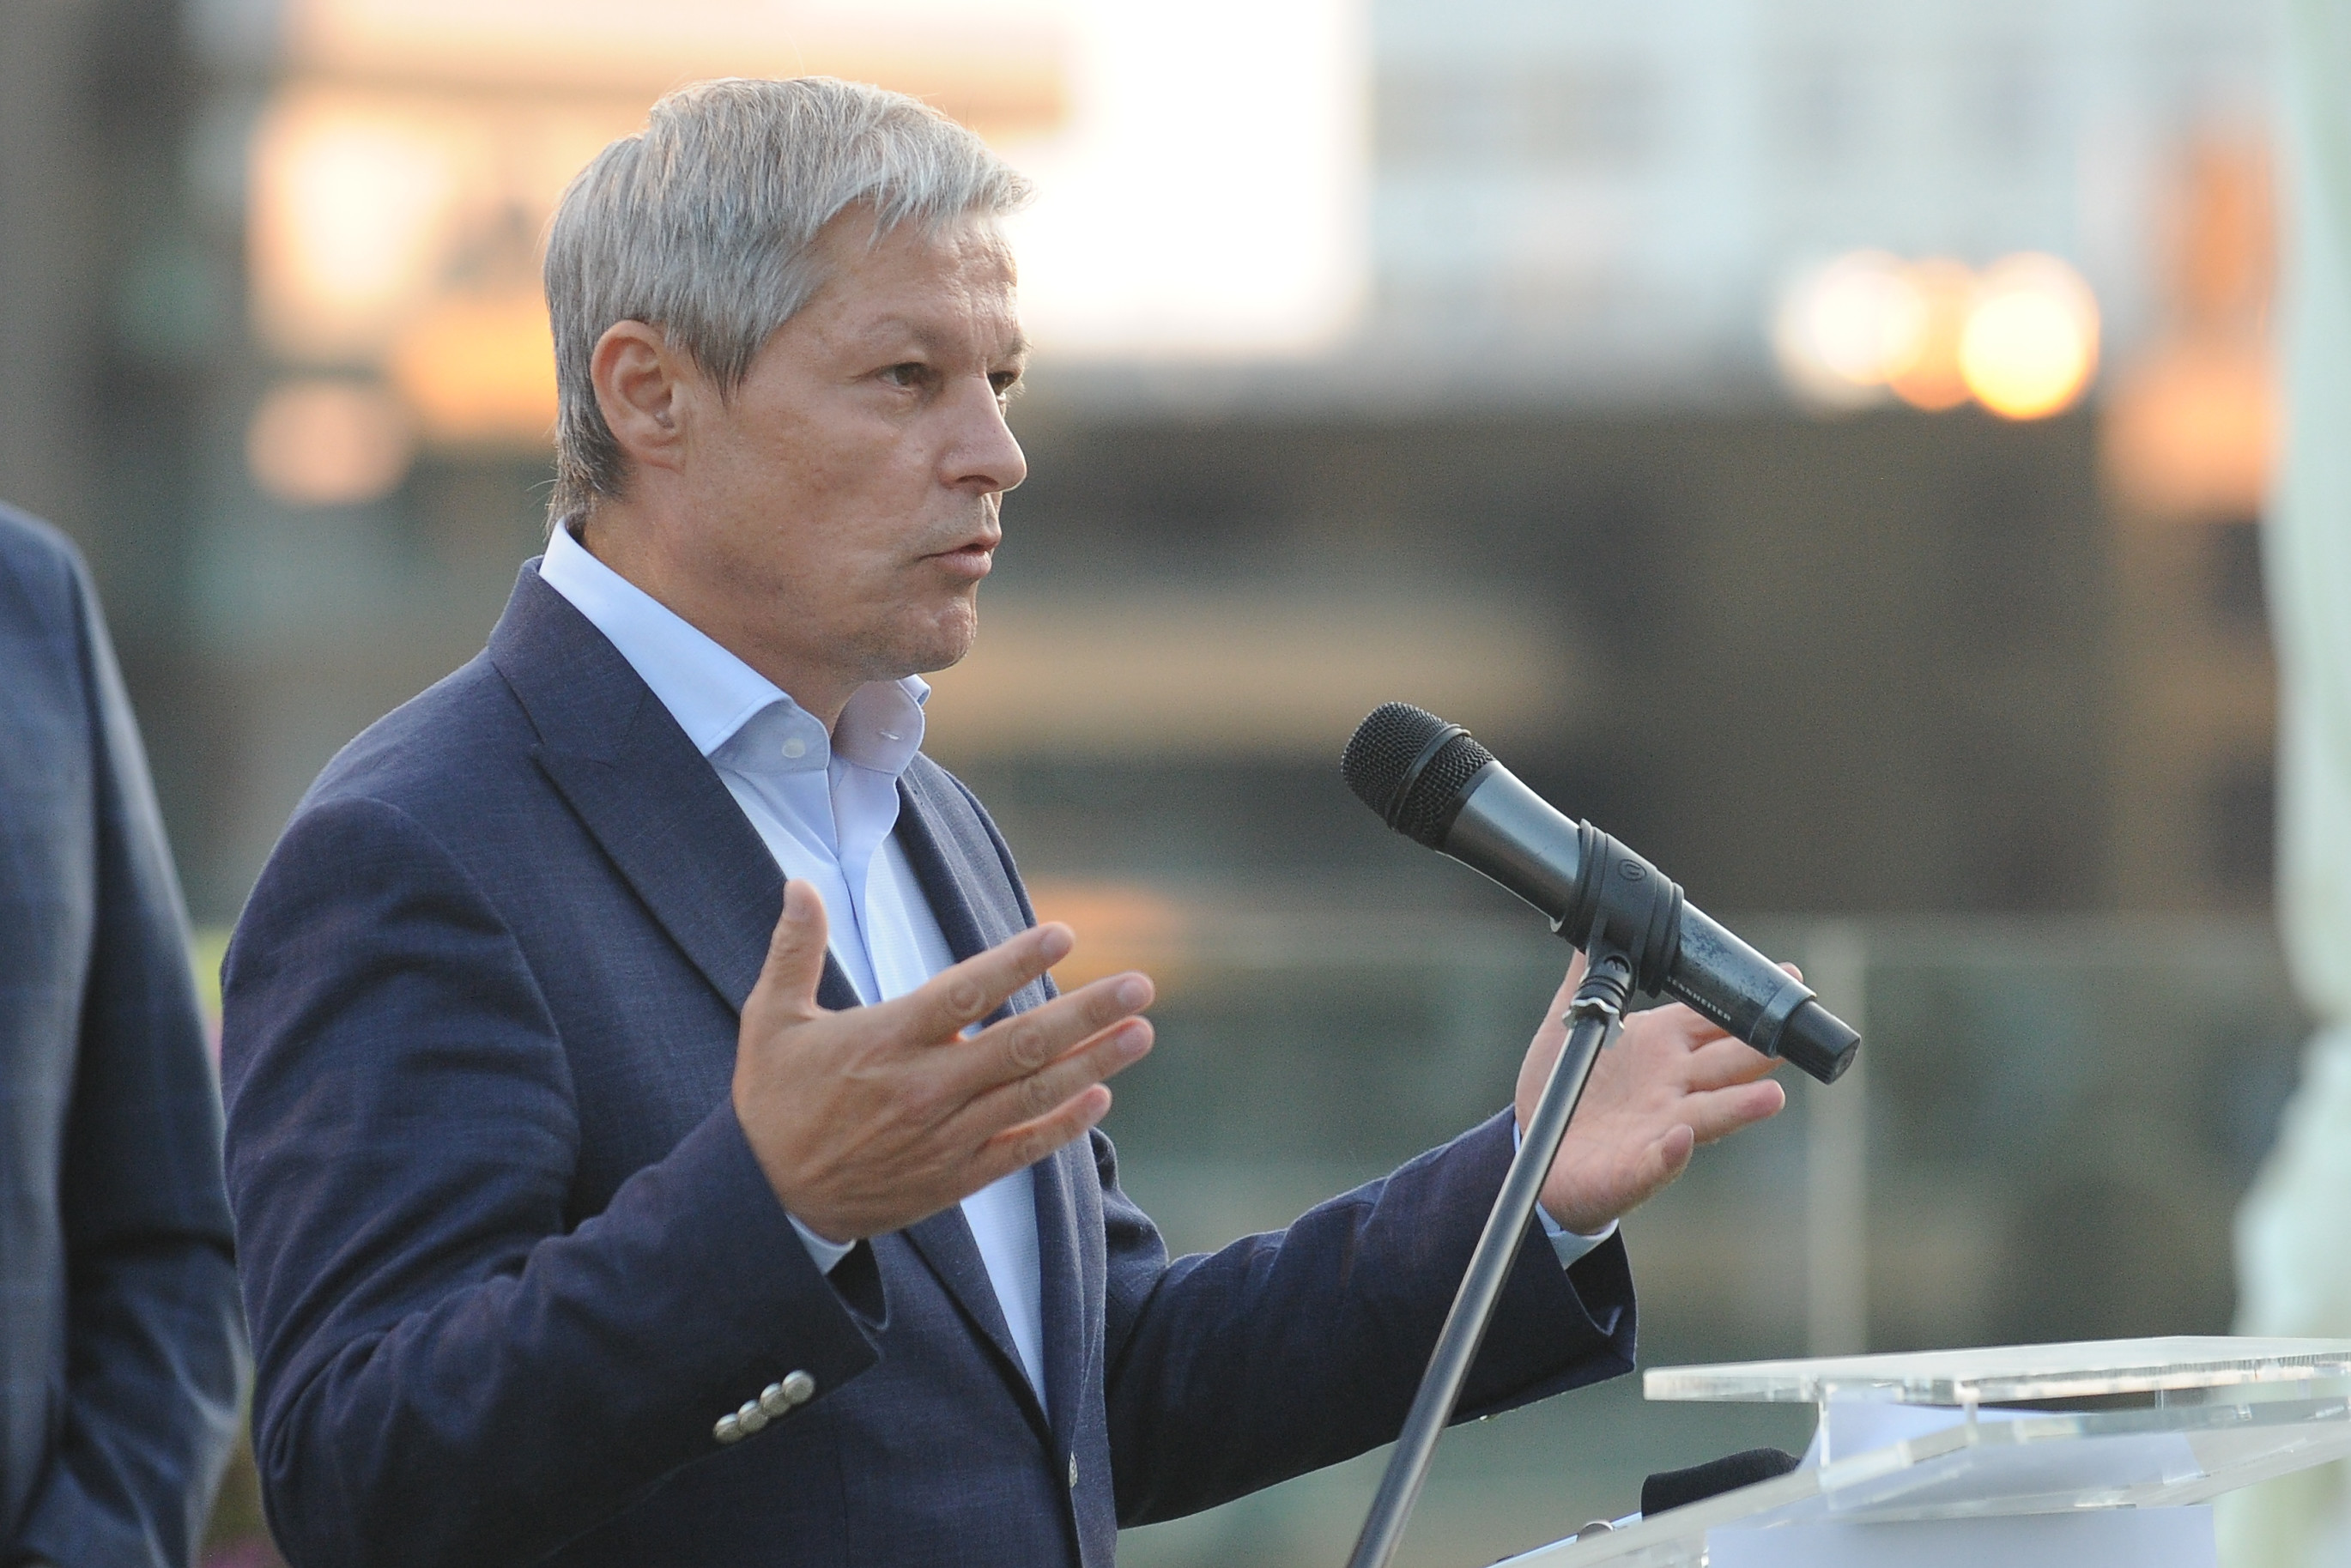 Dacian Cioloș: ”Cresc pensiile, cresc salariile, cresc investiţiile. Atunci, unde e austeritatea?”